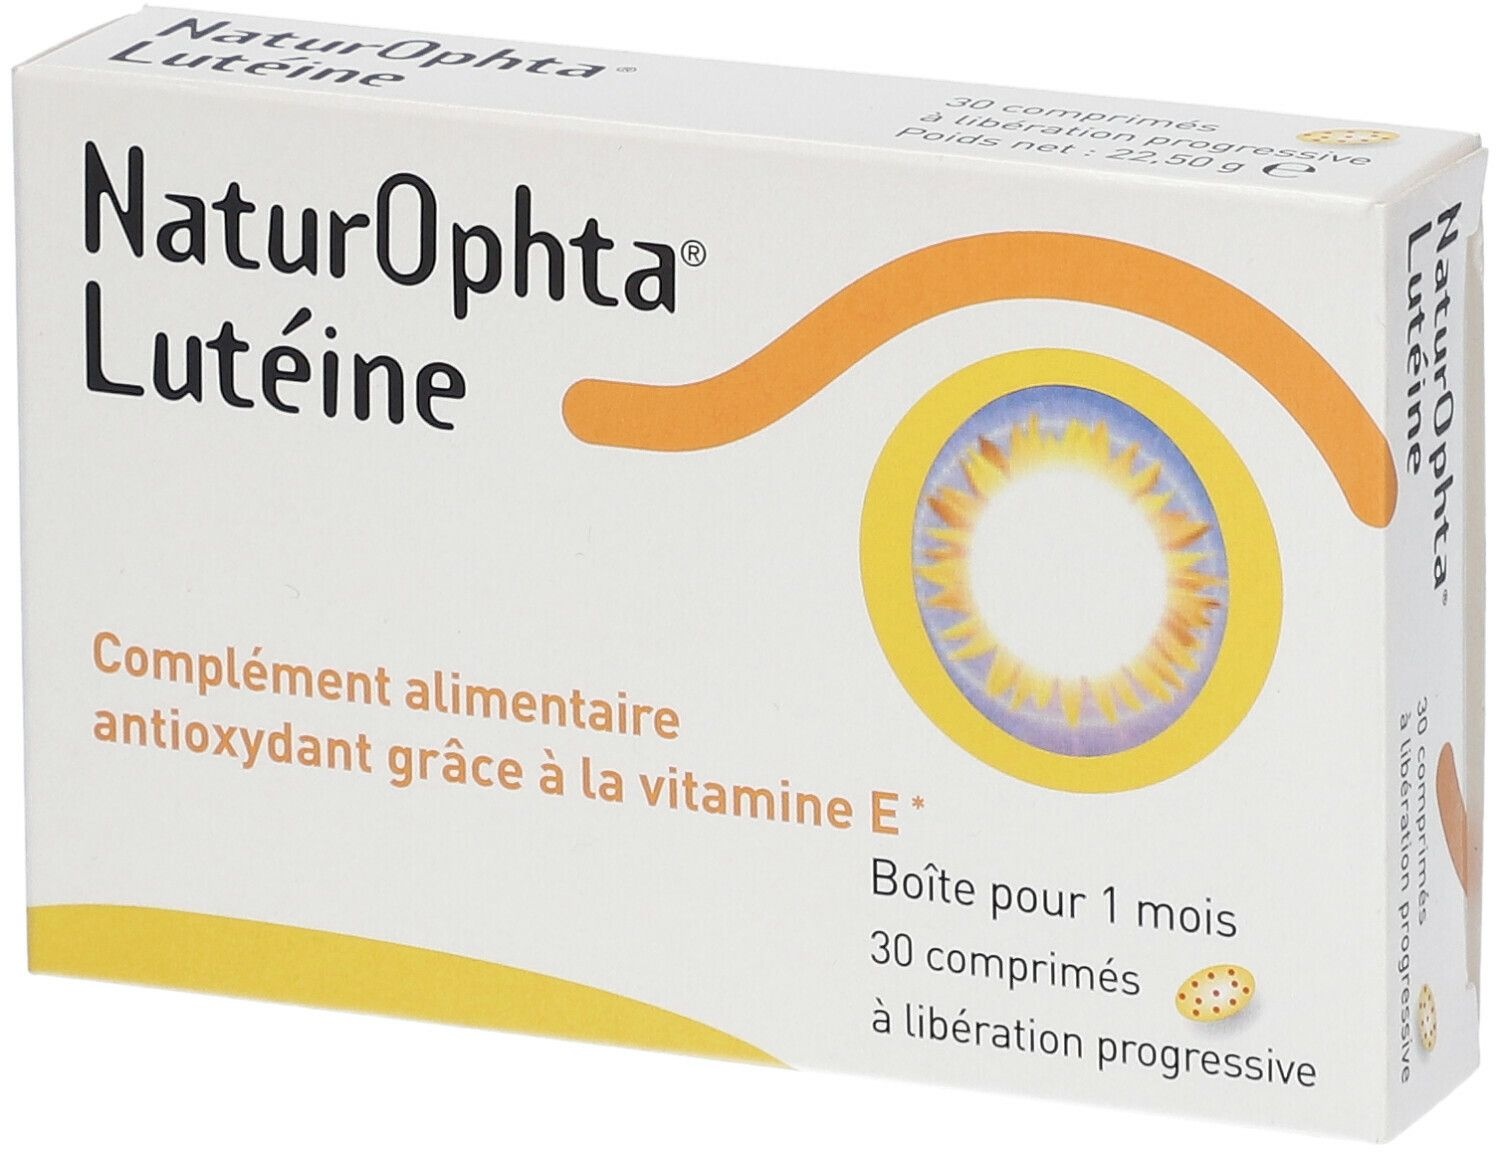 NaturOphta® Lutein